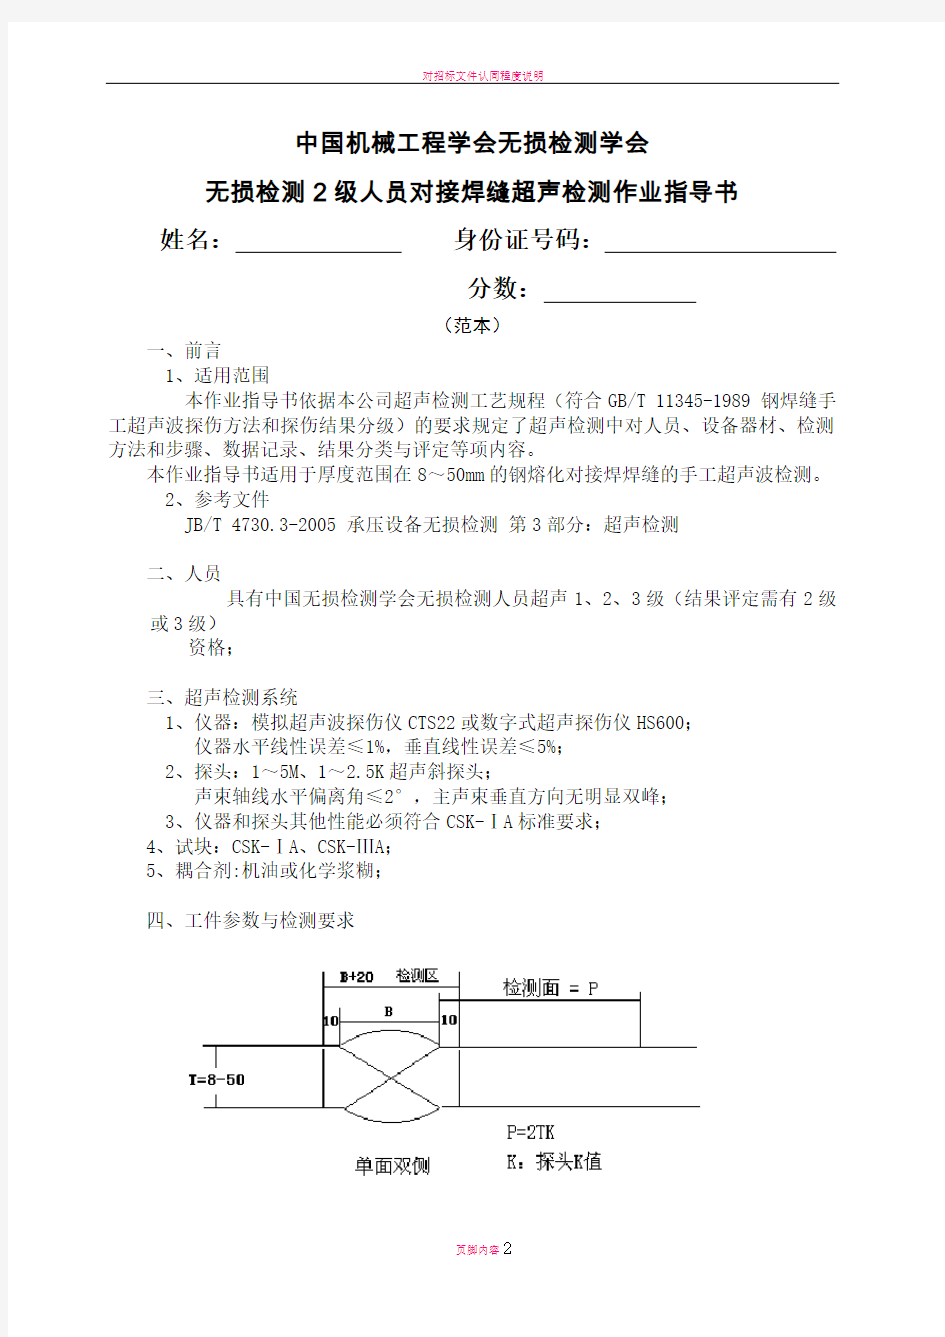 对接焊缝超声检测作业指导书(范本)